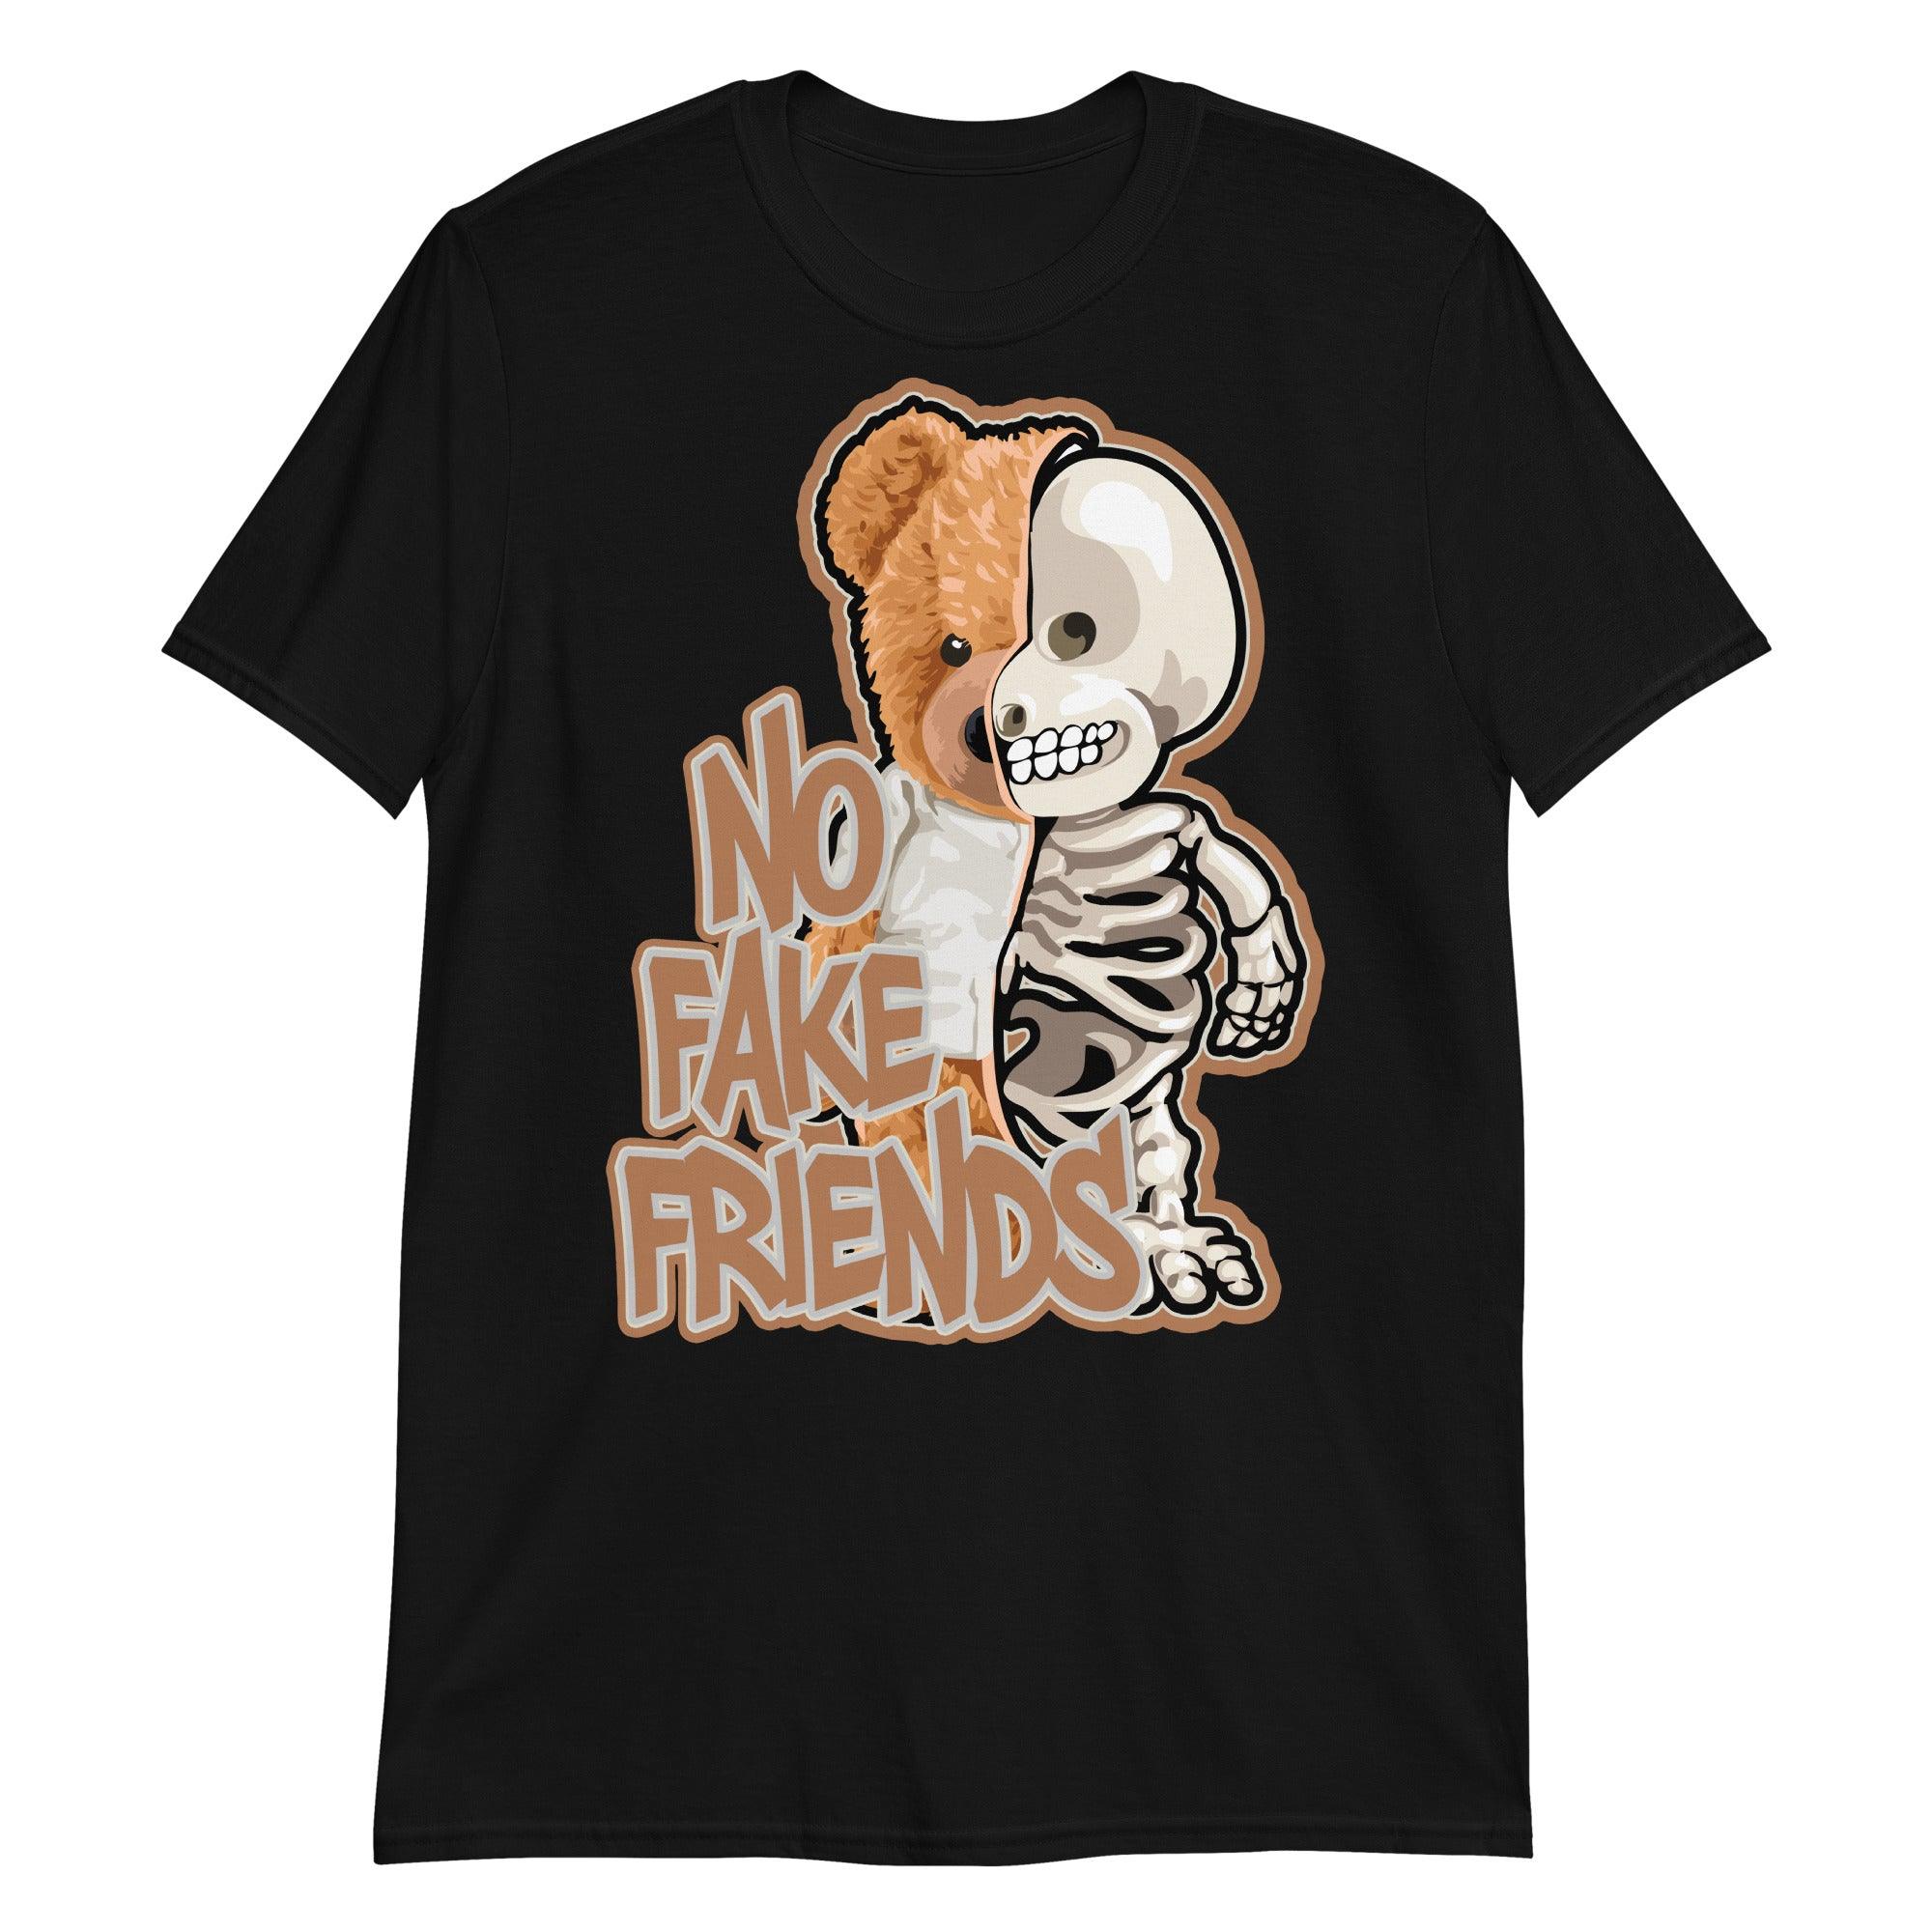 Black No Fake Friends Shirt Air Max 1s Patta x Monarch photo